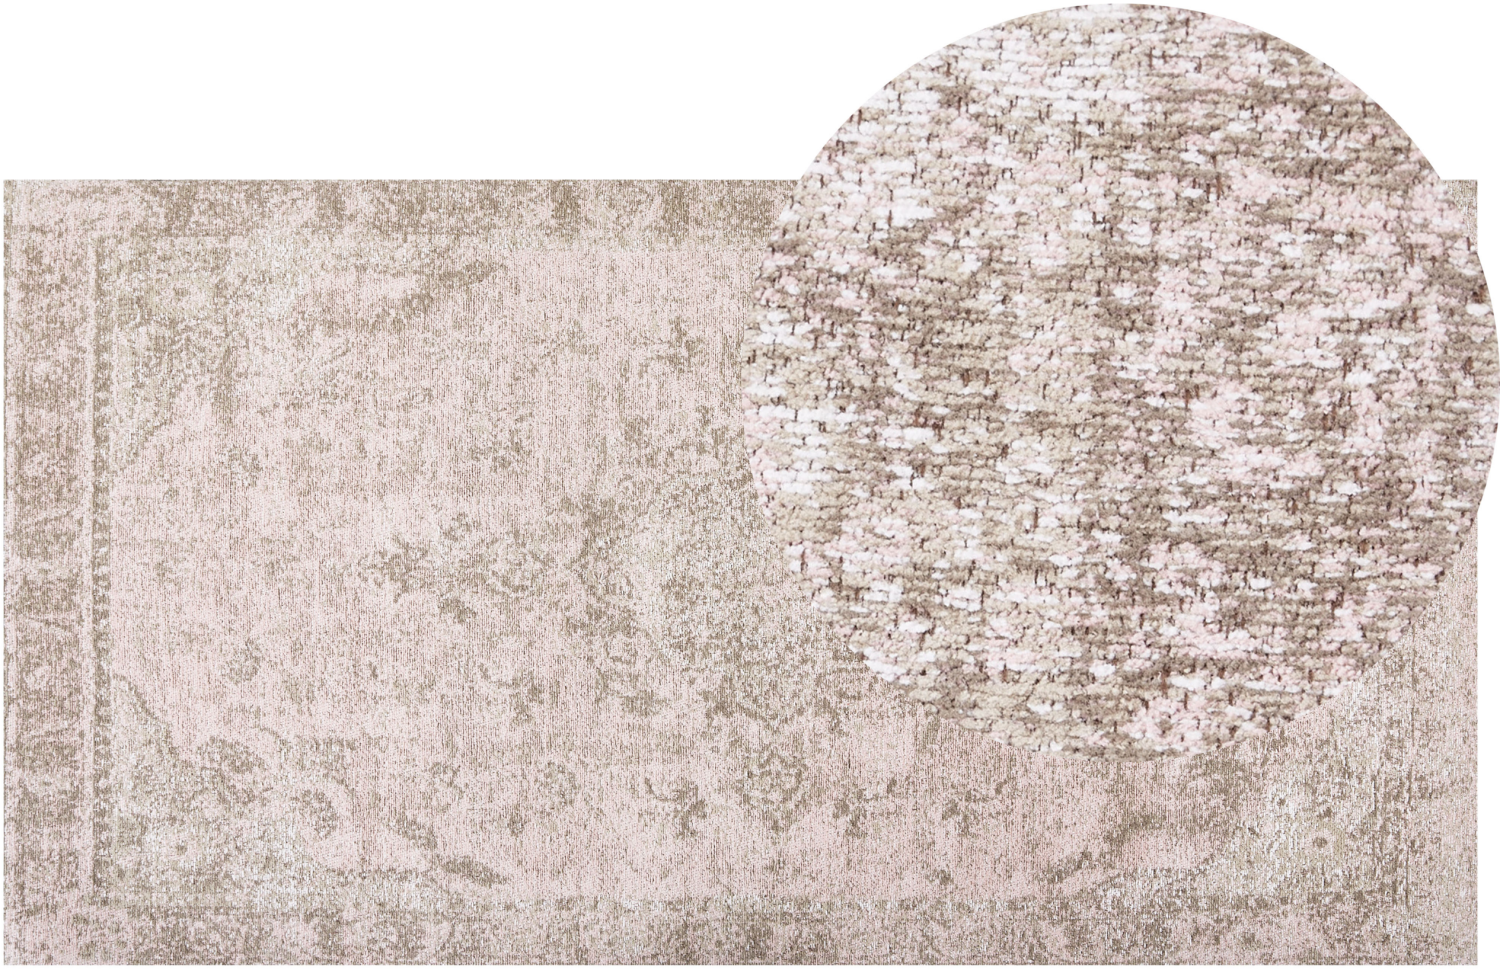 Teppich Baumwolle rosa 80 x 150 cm orientalisches Muster Kurzflor MATARIM Bild 1